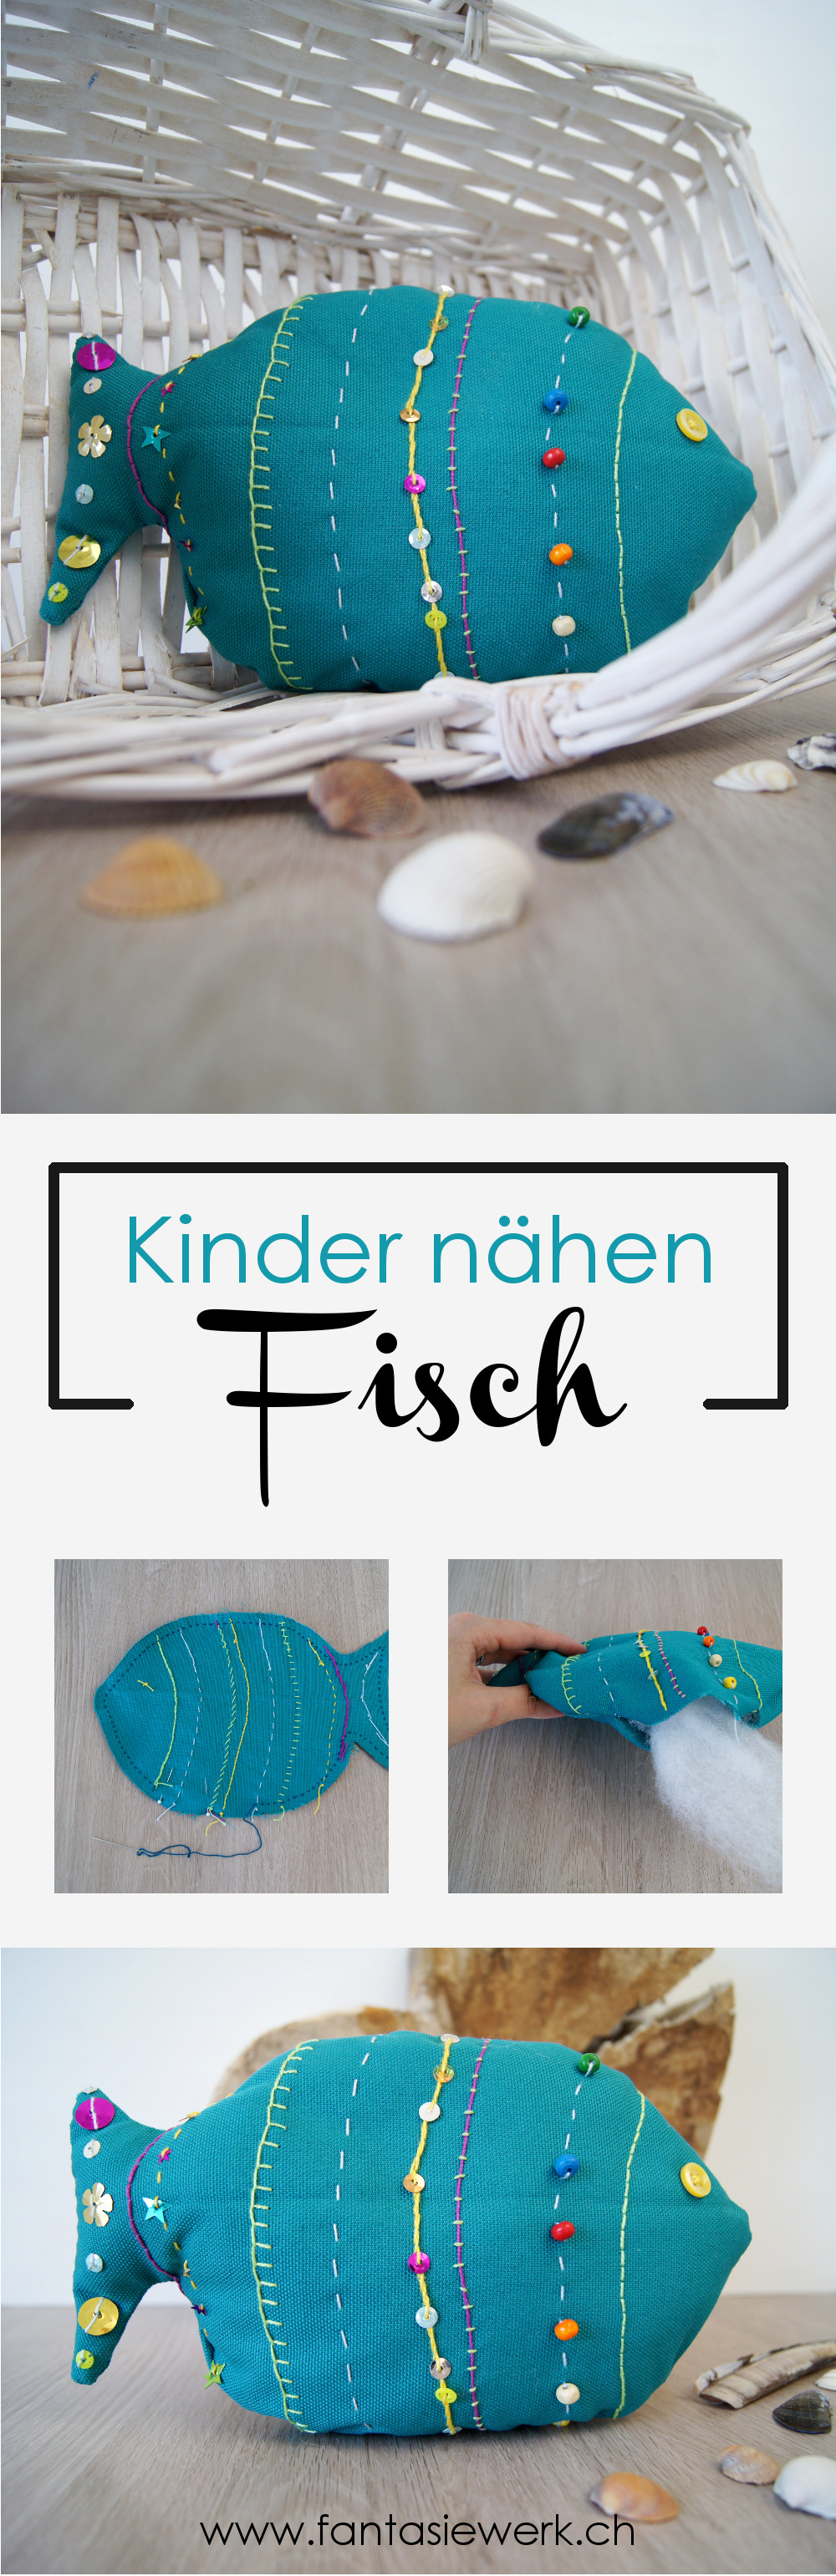 Anleitung zum Handarbeiten mit Kindern | #Stofftier Fisch nähen und #sticken | von Fantasiewerk